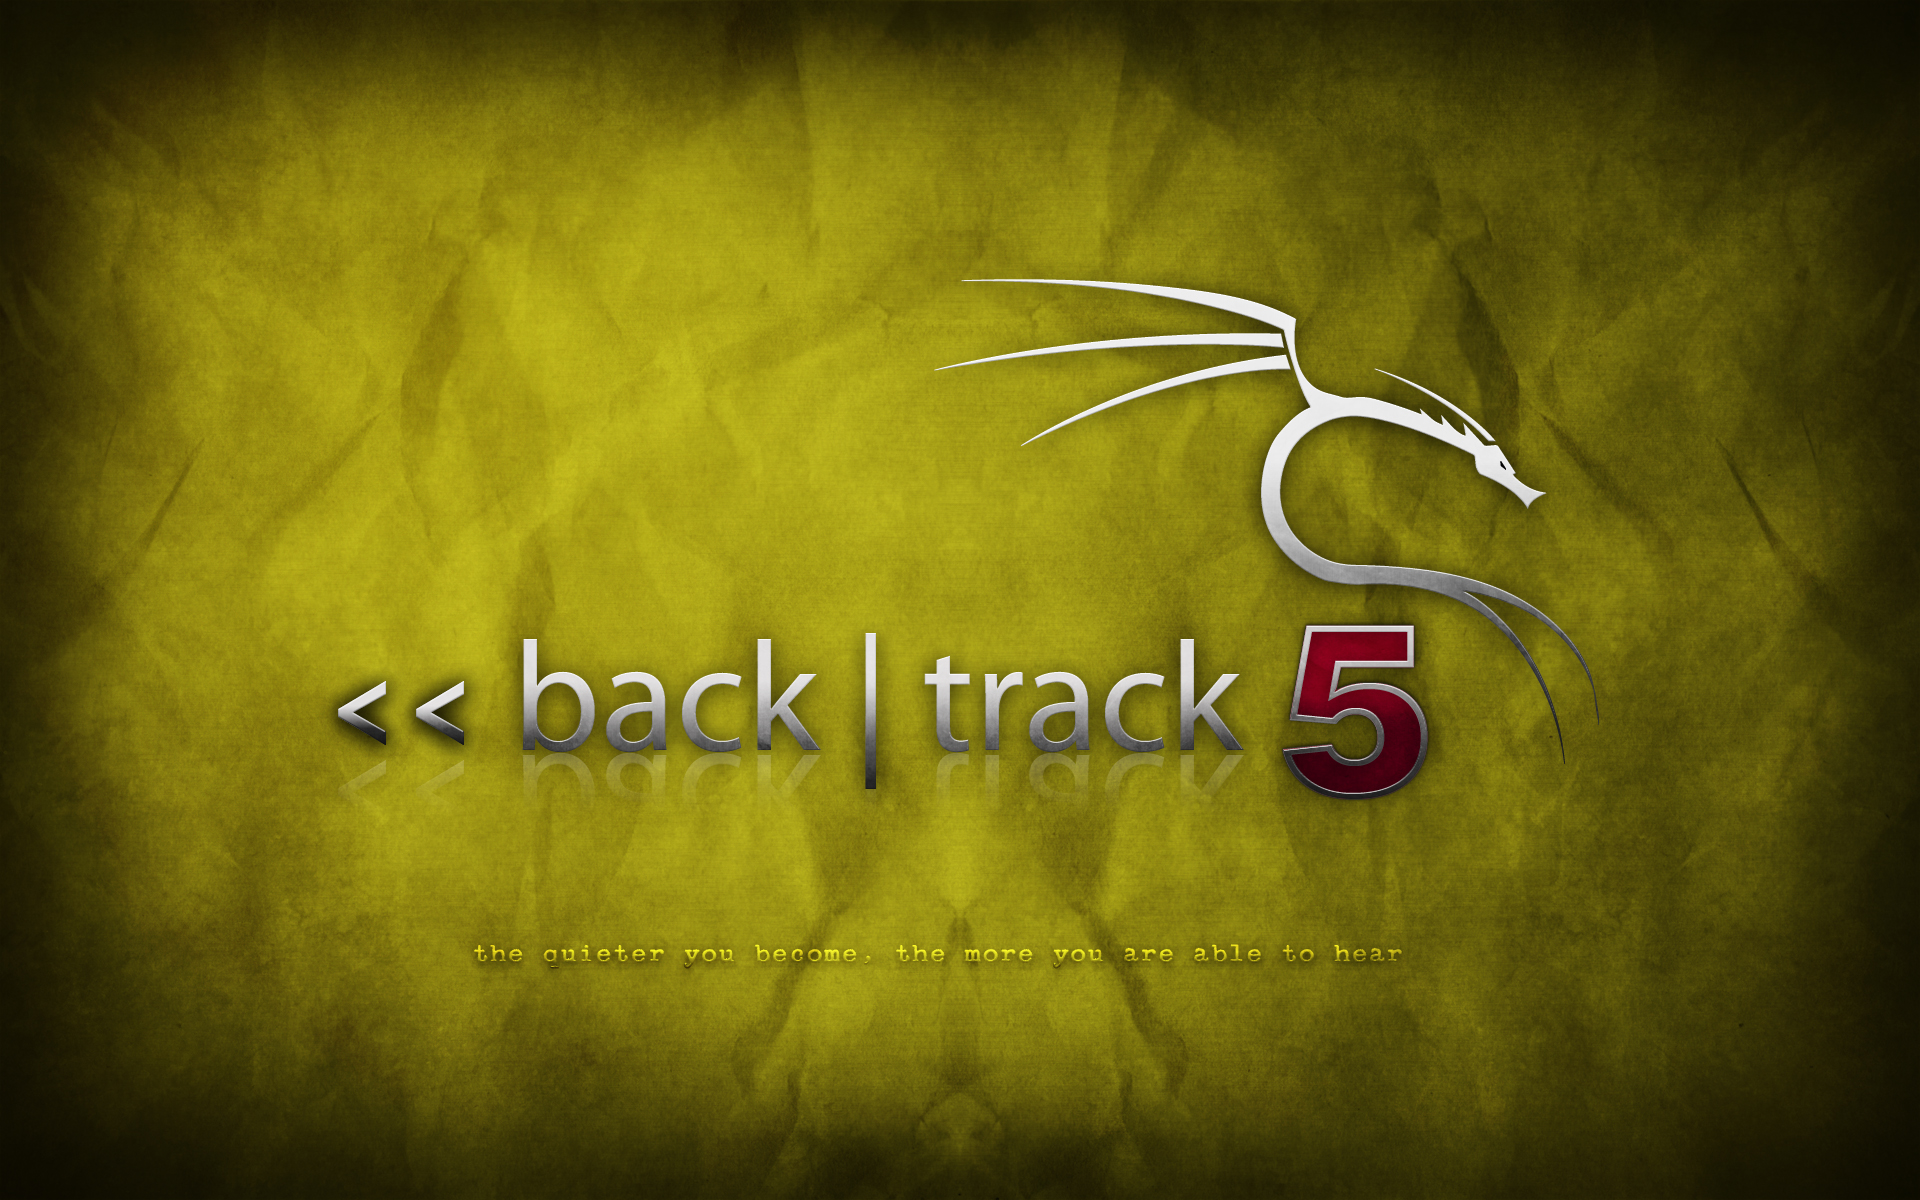 backtrack 5 linux download